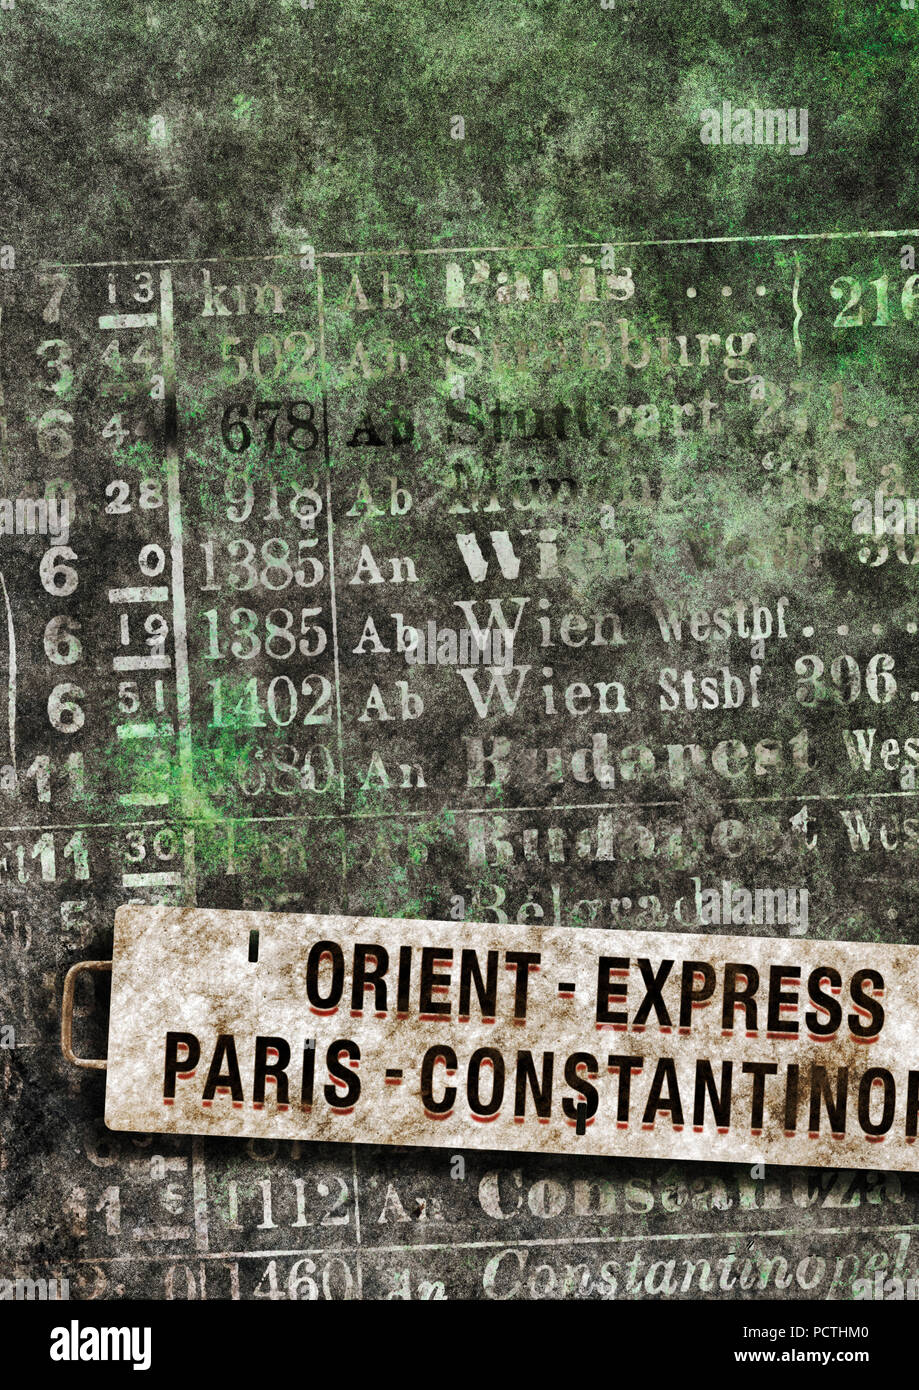 Orient Express, Zug Zeichen, Paris - Konstantinopel, Zeitplan, [M], RailArt, Grafiken, Erstellen Stockfoto